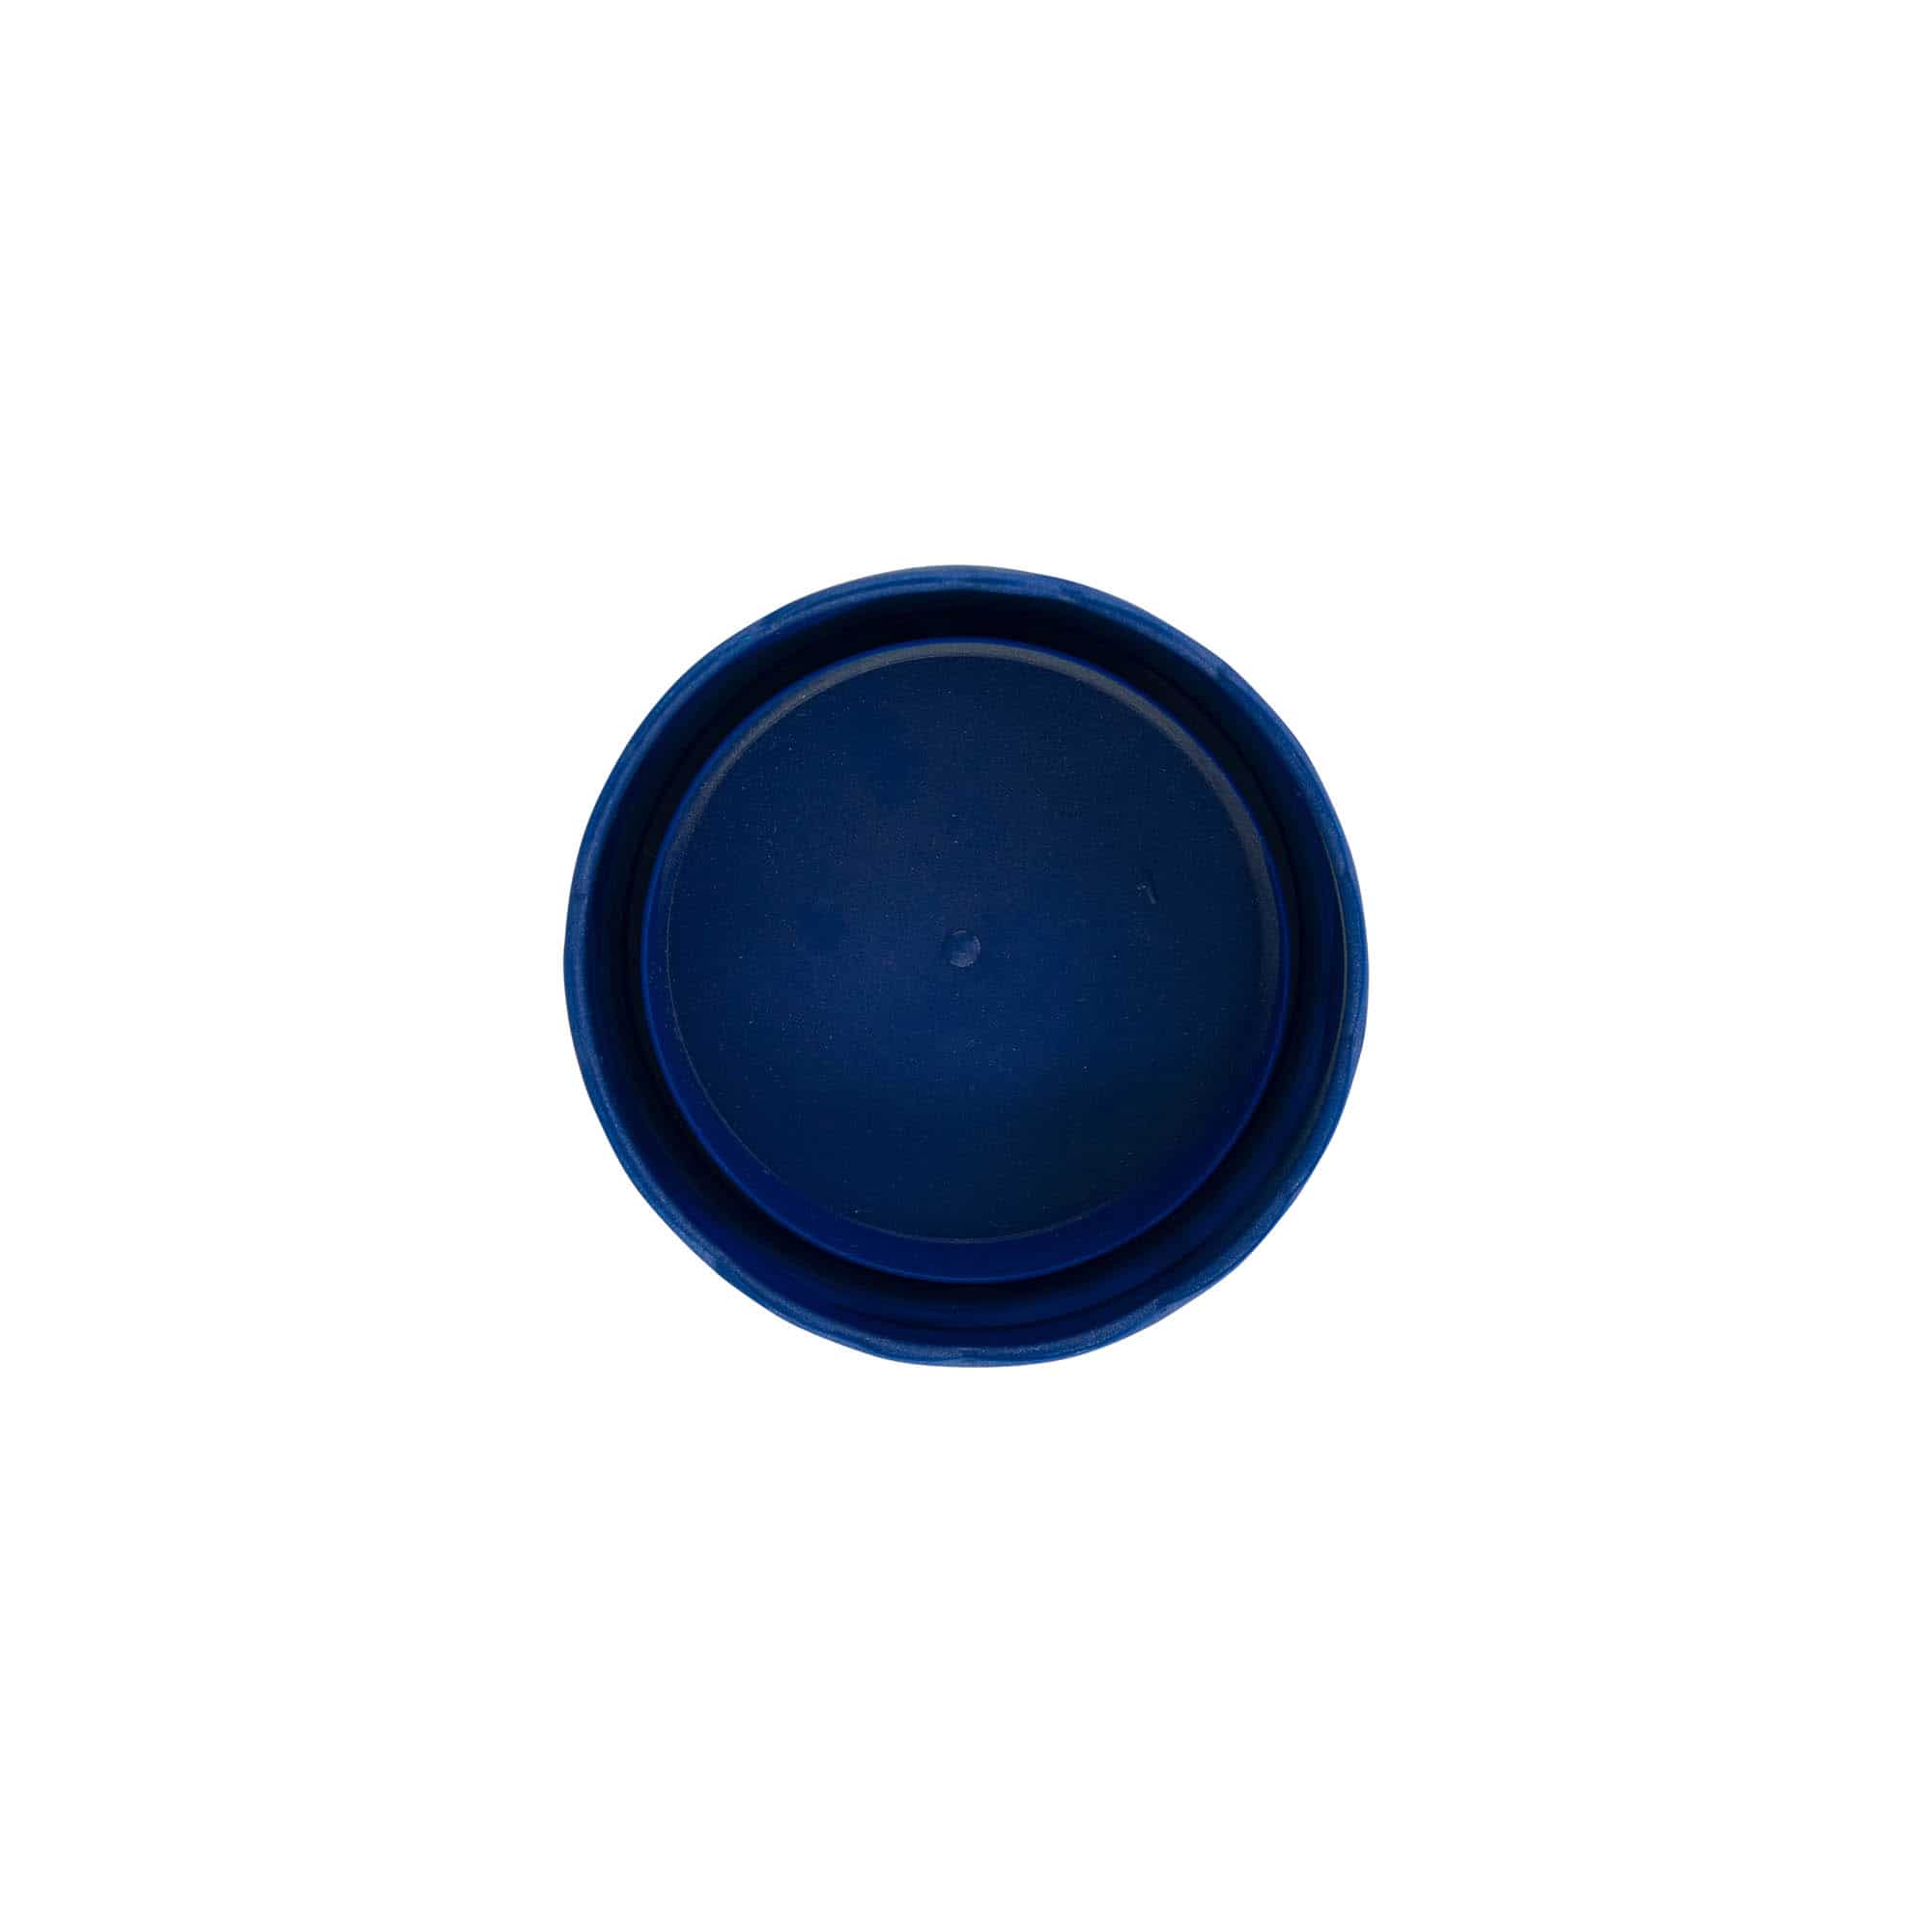 Wieczko do słoiczka kamionkowego z wąską szyjką, tworzywo sztuczne HDPE, kolor niebieski